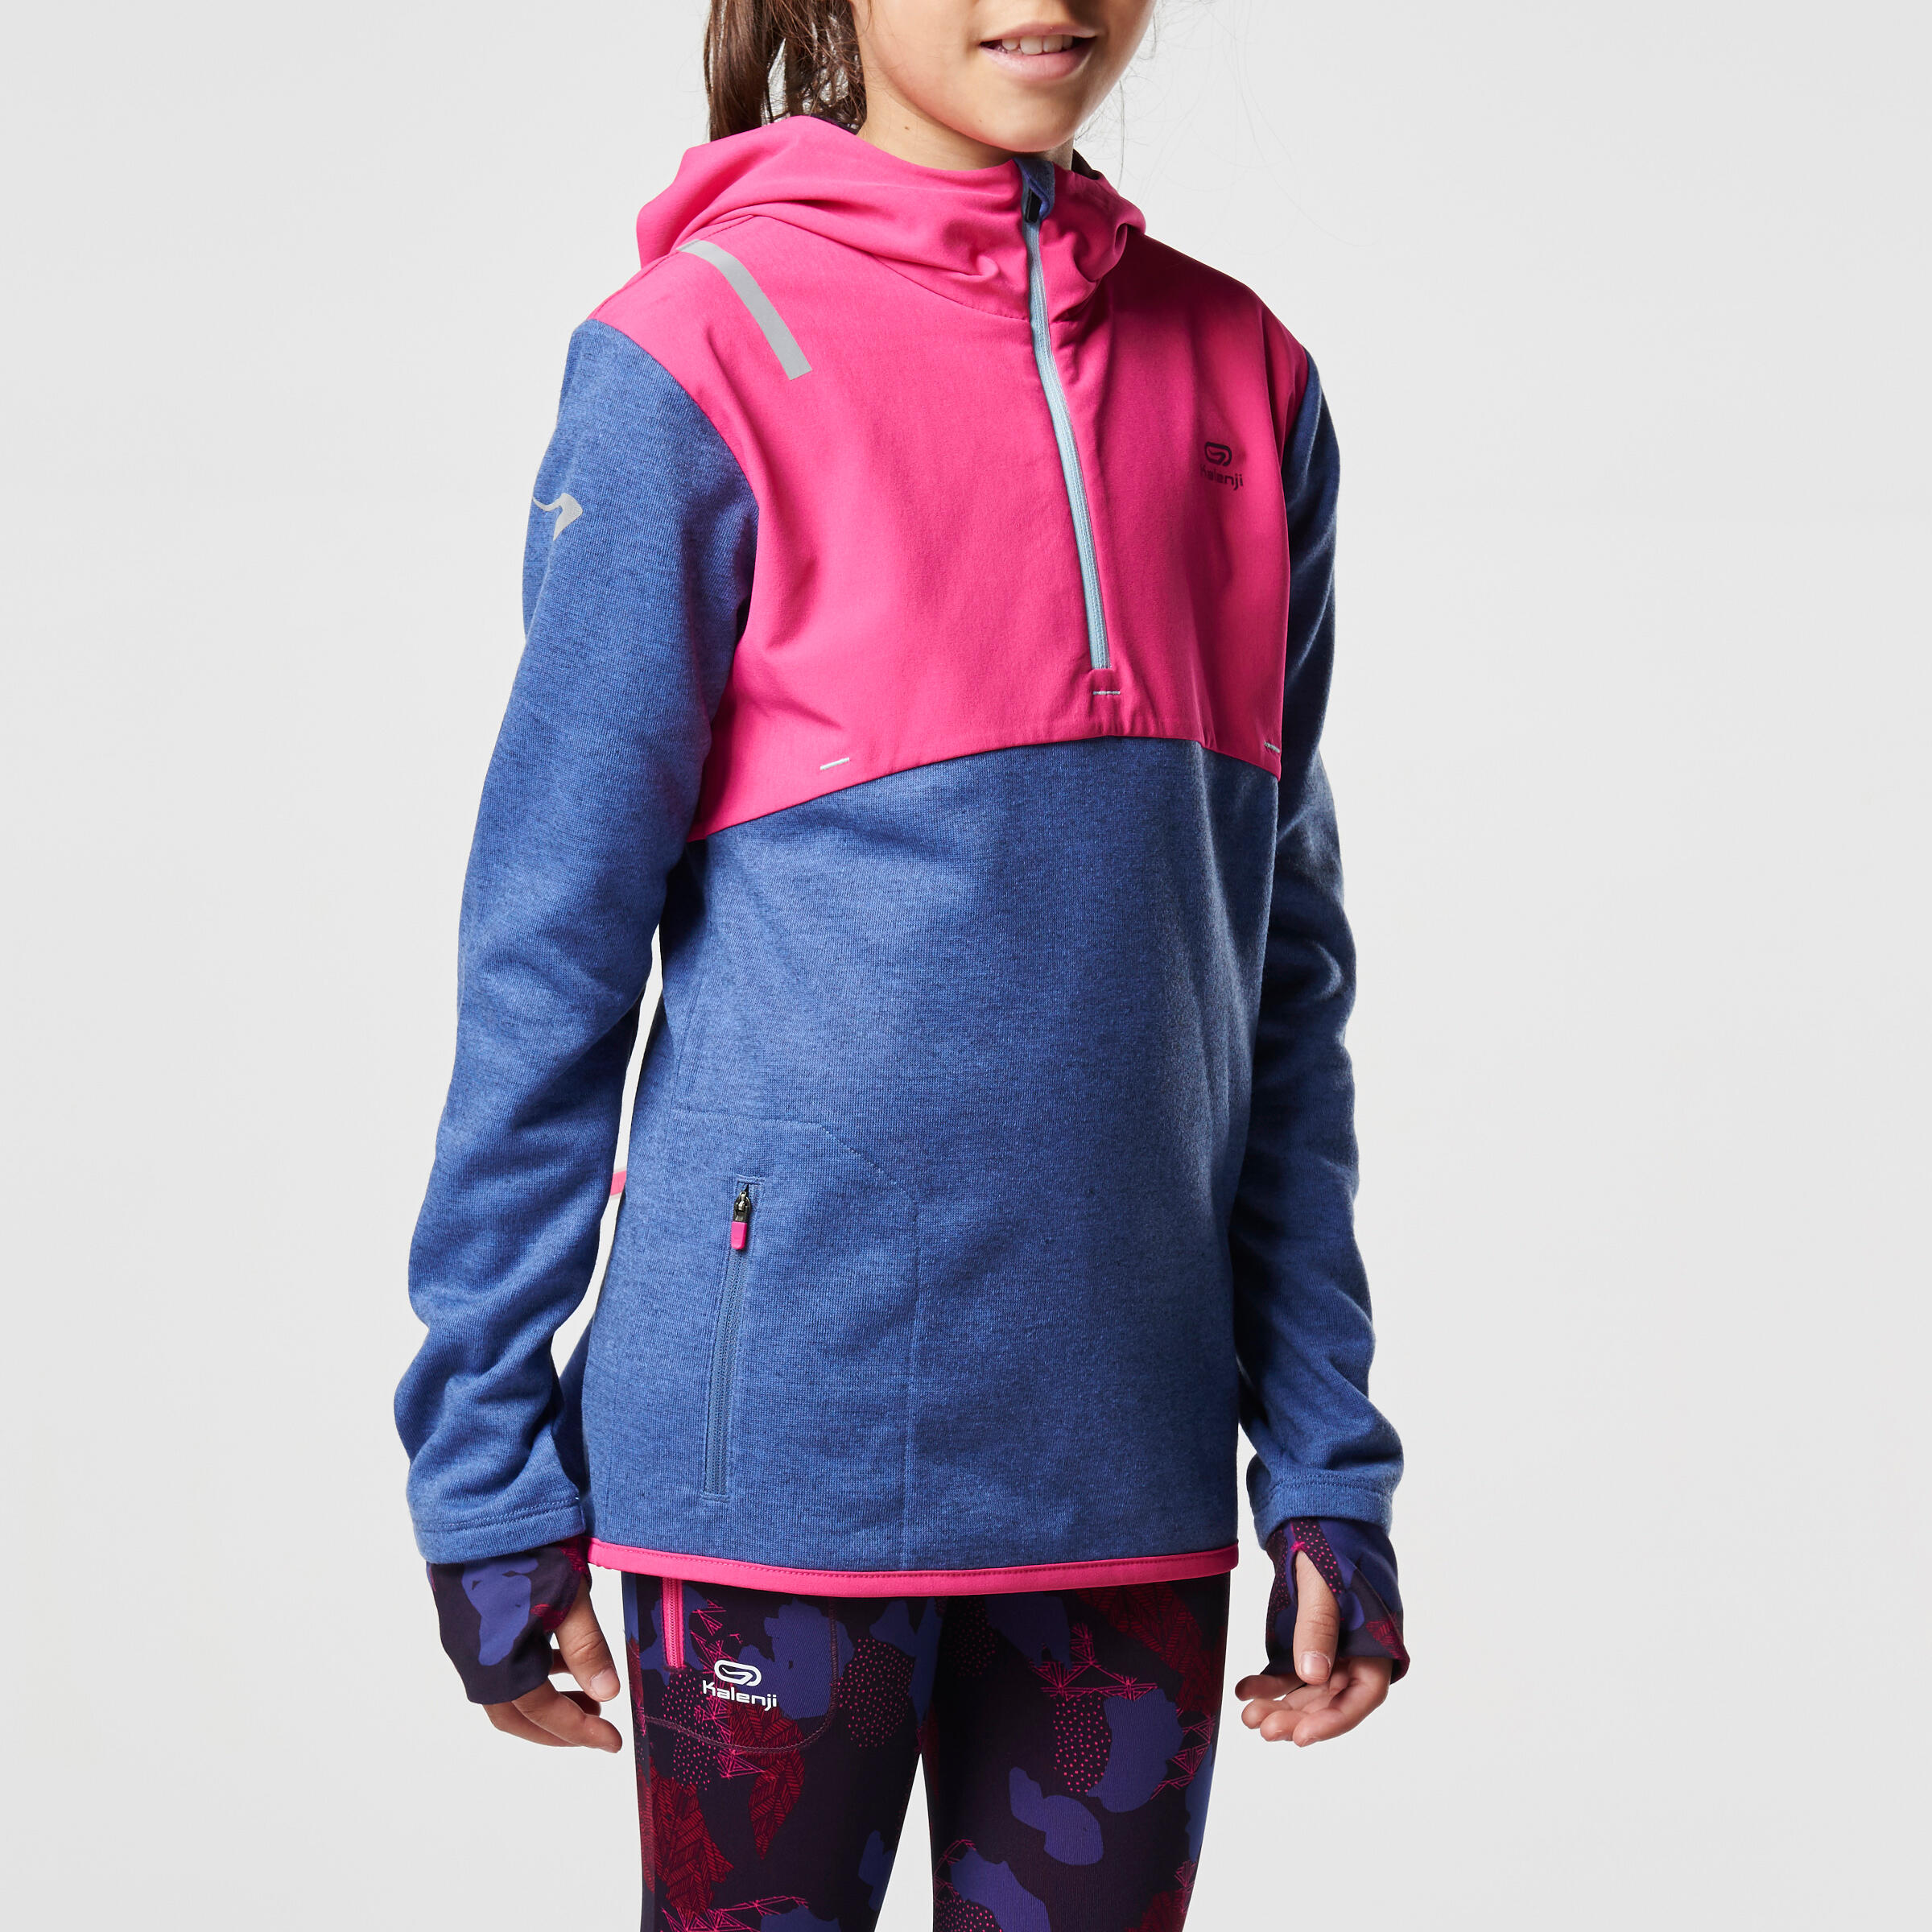 Elio Children's Running Hooded Jersey - Pink/Blue
 3/16